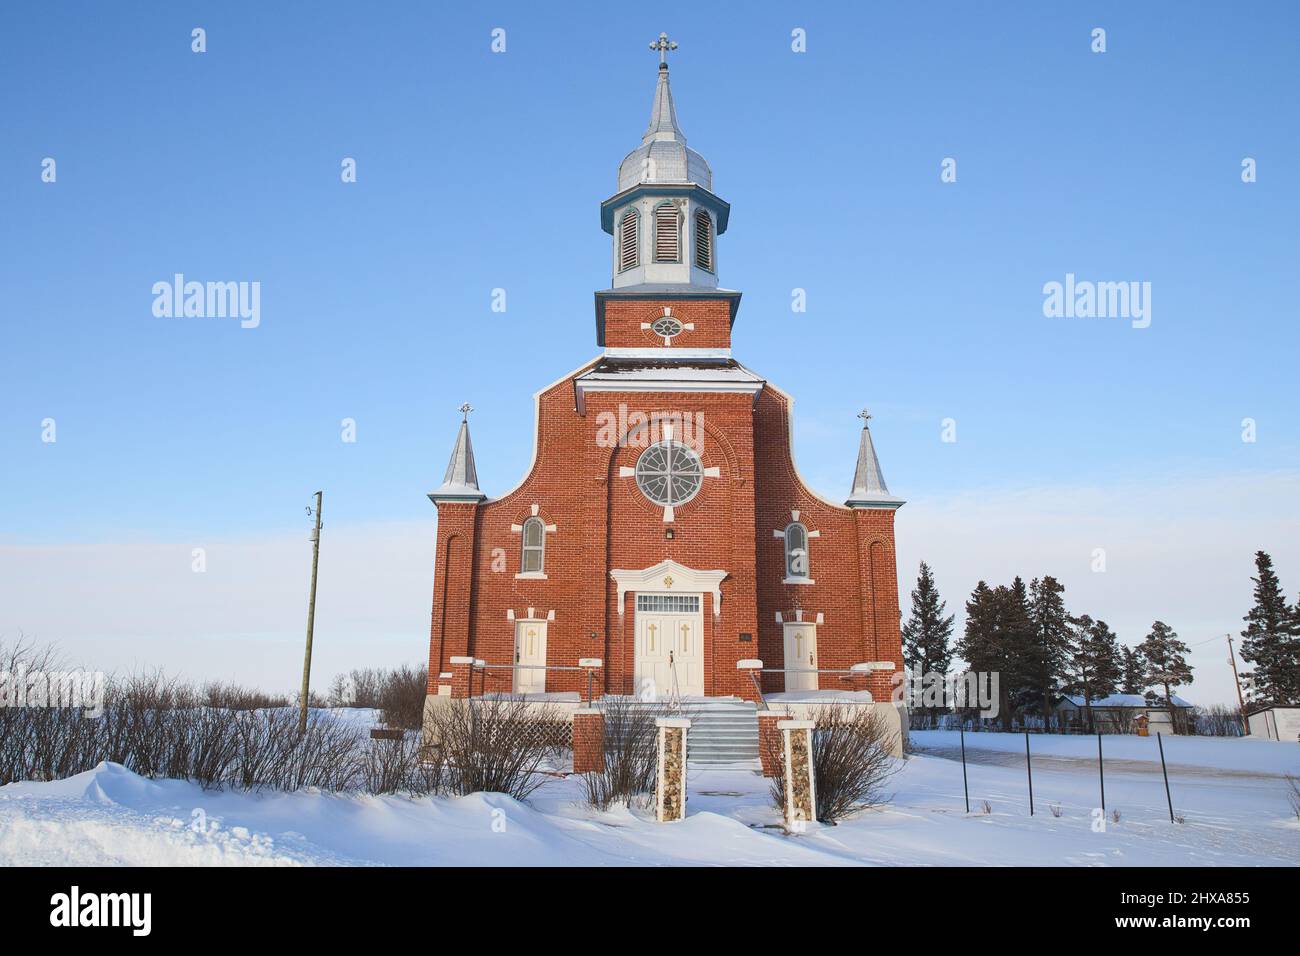 Église catholique de Saint-Norberts-Roamn dans un paysage rural d'hiver Banque D'Images